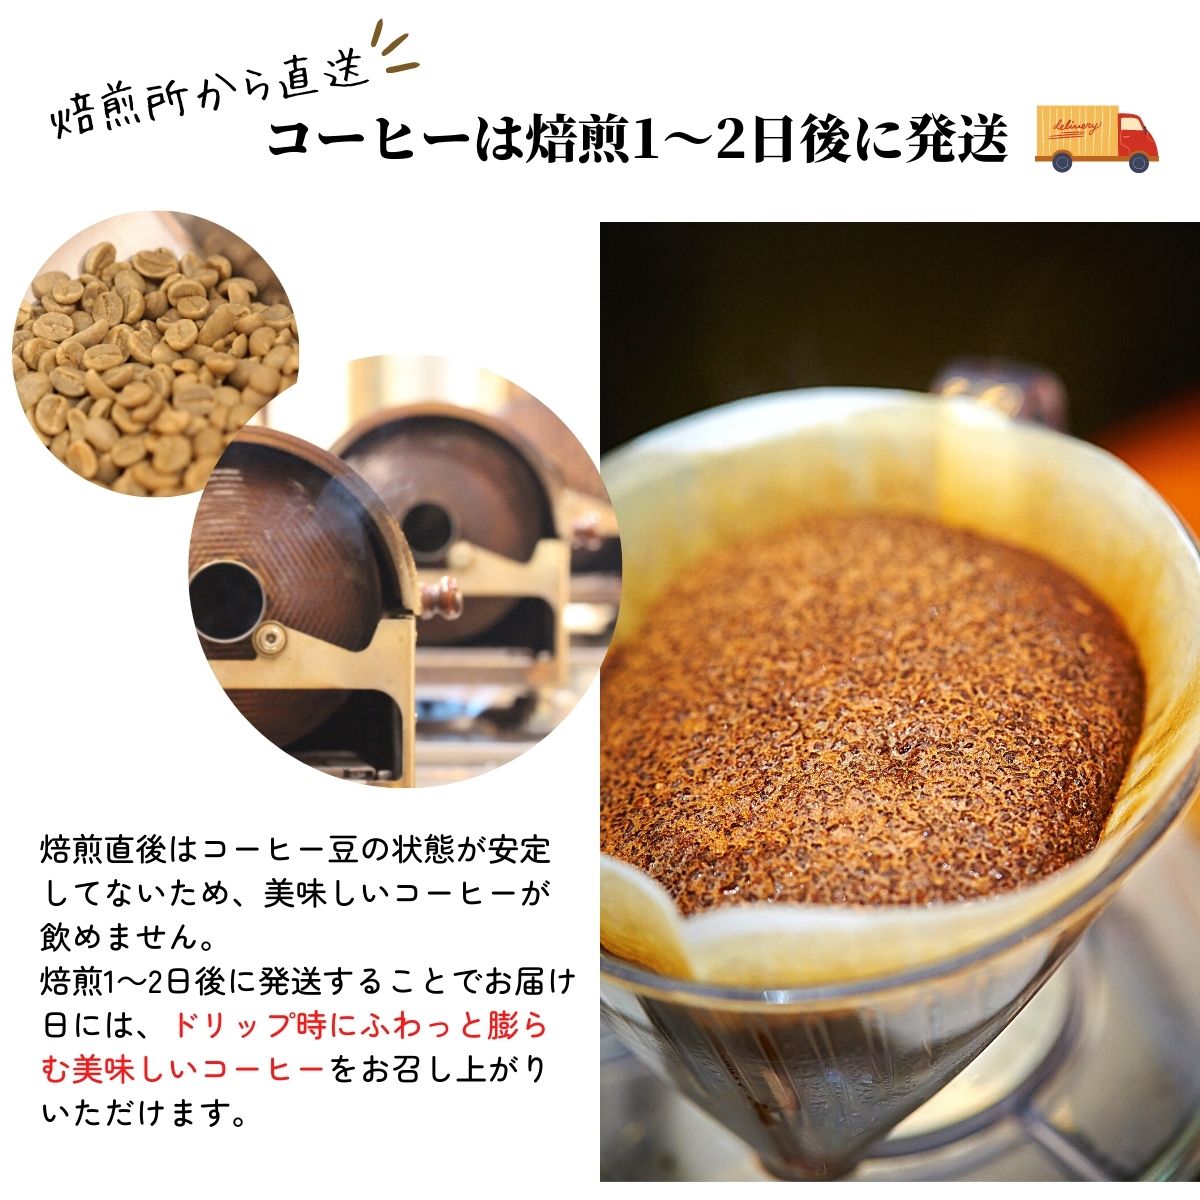 コーヒー豆 自家焙煎 珈琲豆屋 種類 ブラジル ショコラ 200g | 高級